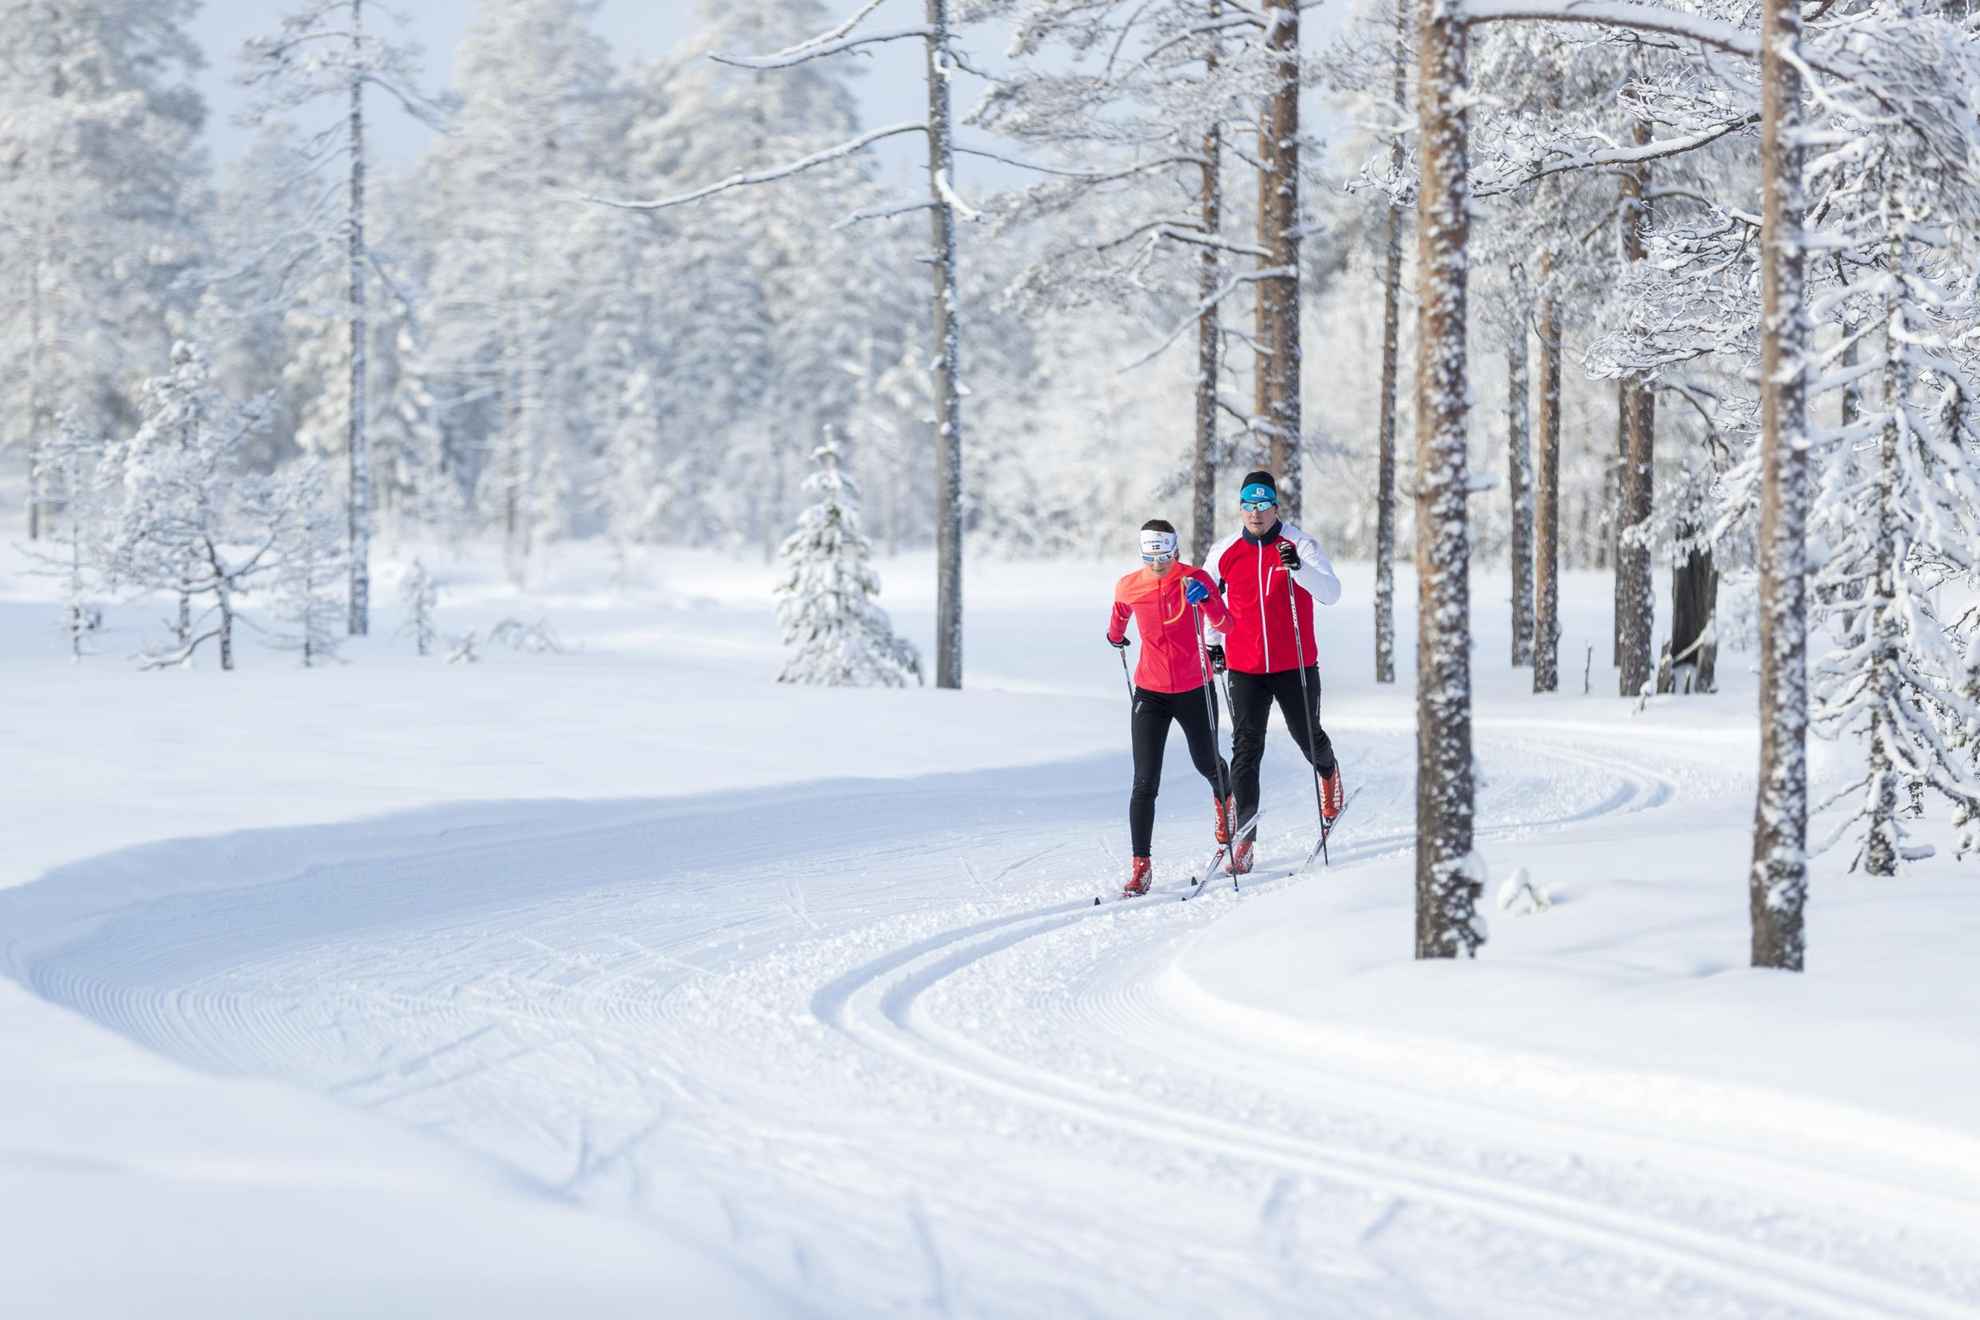 Twee mensen in rode jassen zijn aan het langlaufen in een besneeuwd bos.